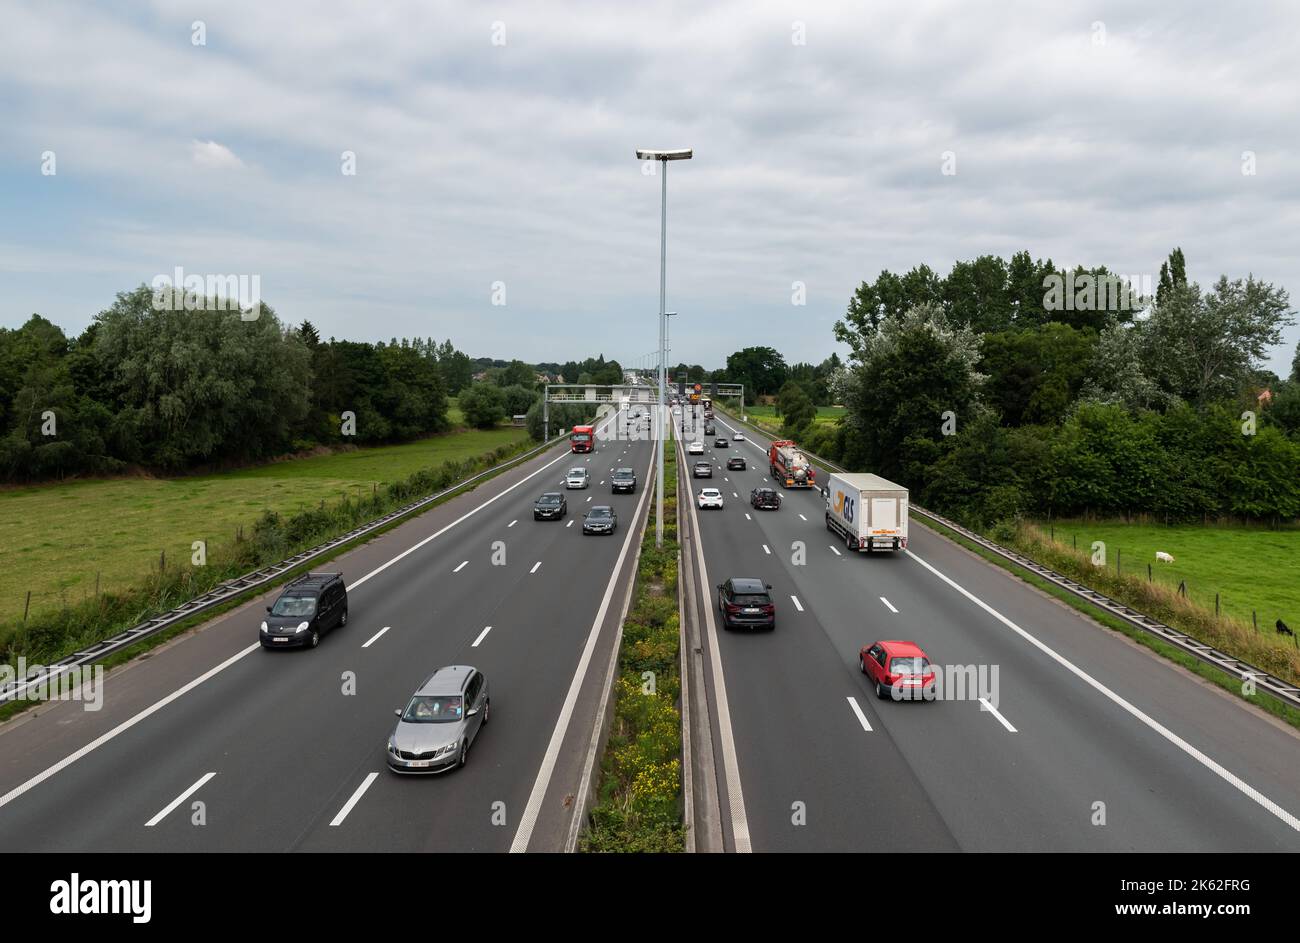 Wetteren, East Flanders Region, Belgium - 07 15 2021 The E40 highway traffic, taken from above Stock Photo